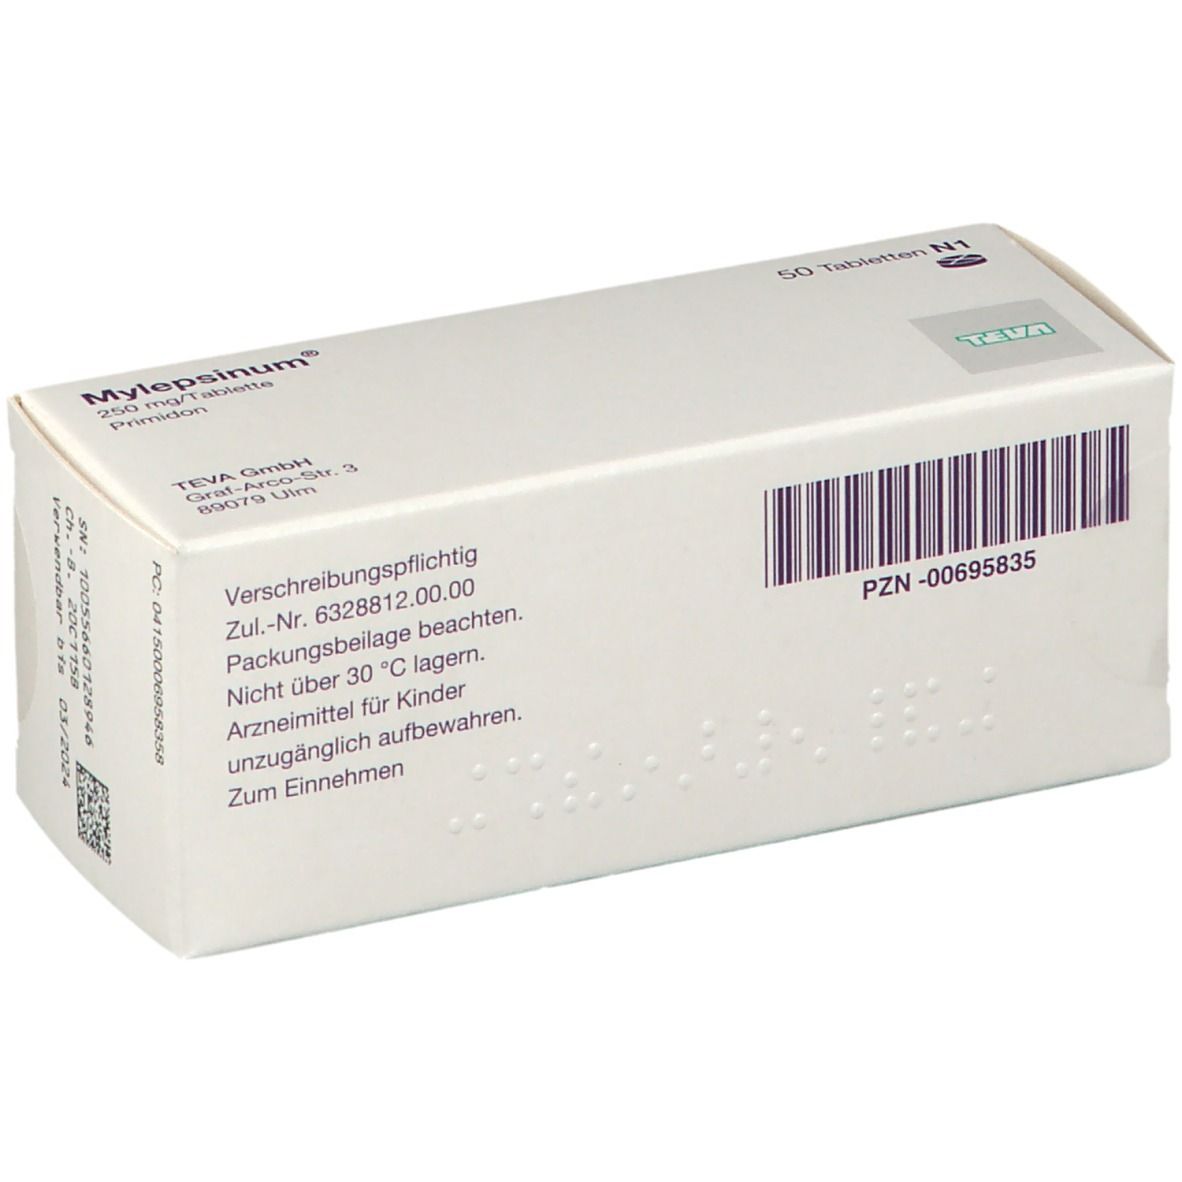 Mylepsinum® 250 mg